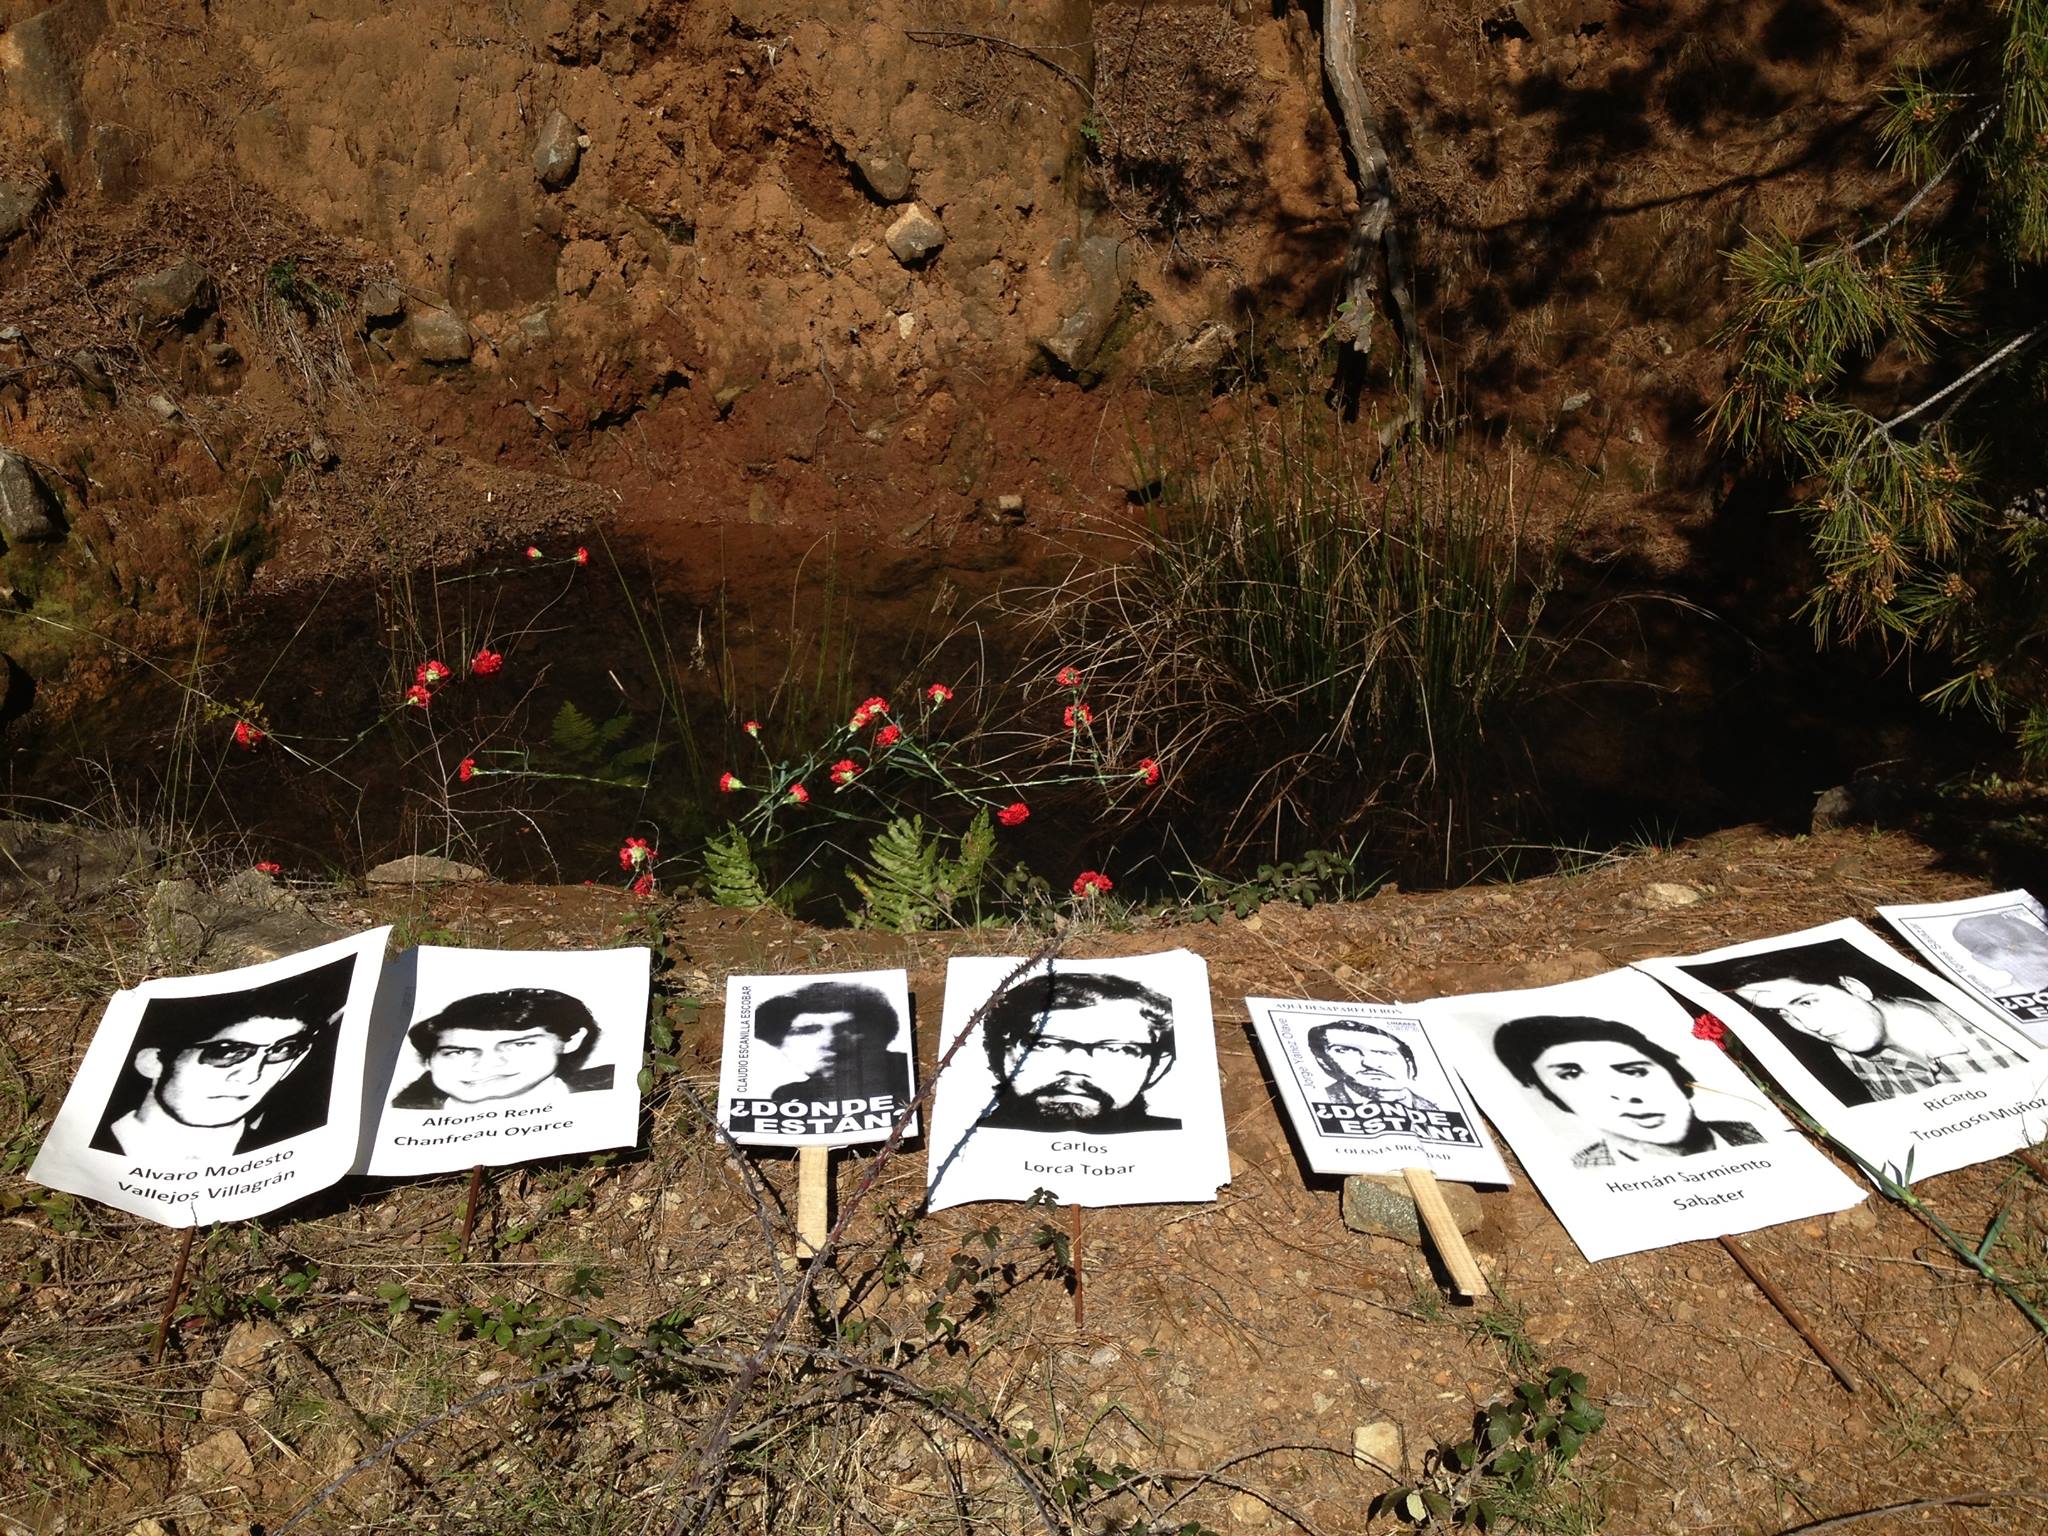 Se aprecia una zanja en la tierra. Al borde de la excavación hay fotos de detenidos desaparecidos.